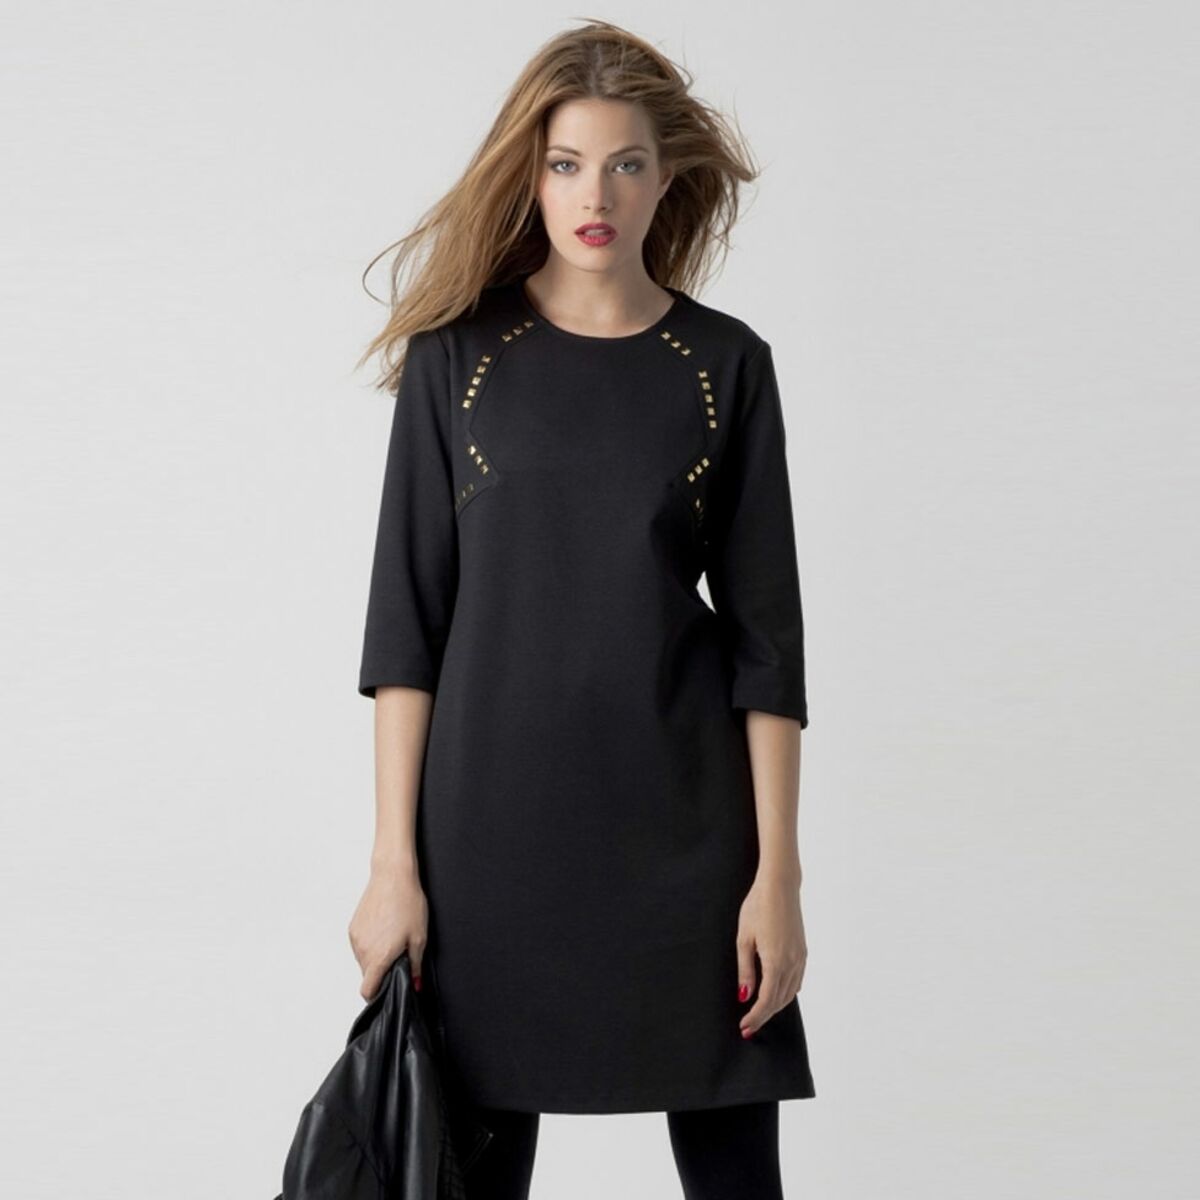 La robe noire, indispensable de la mode 